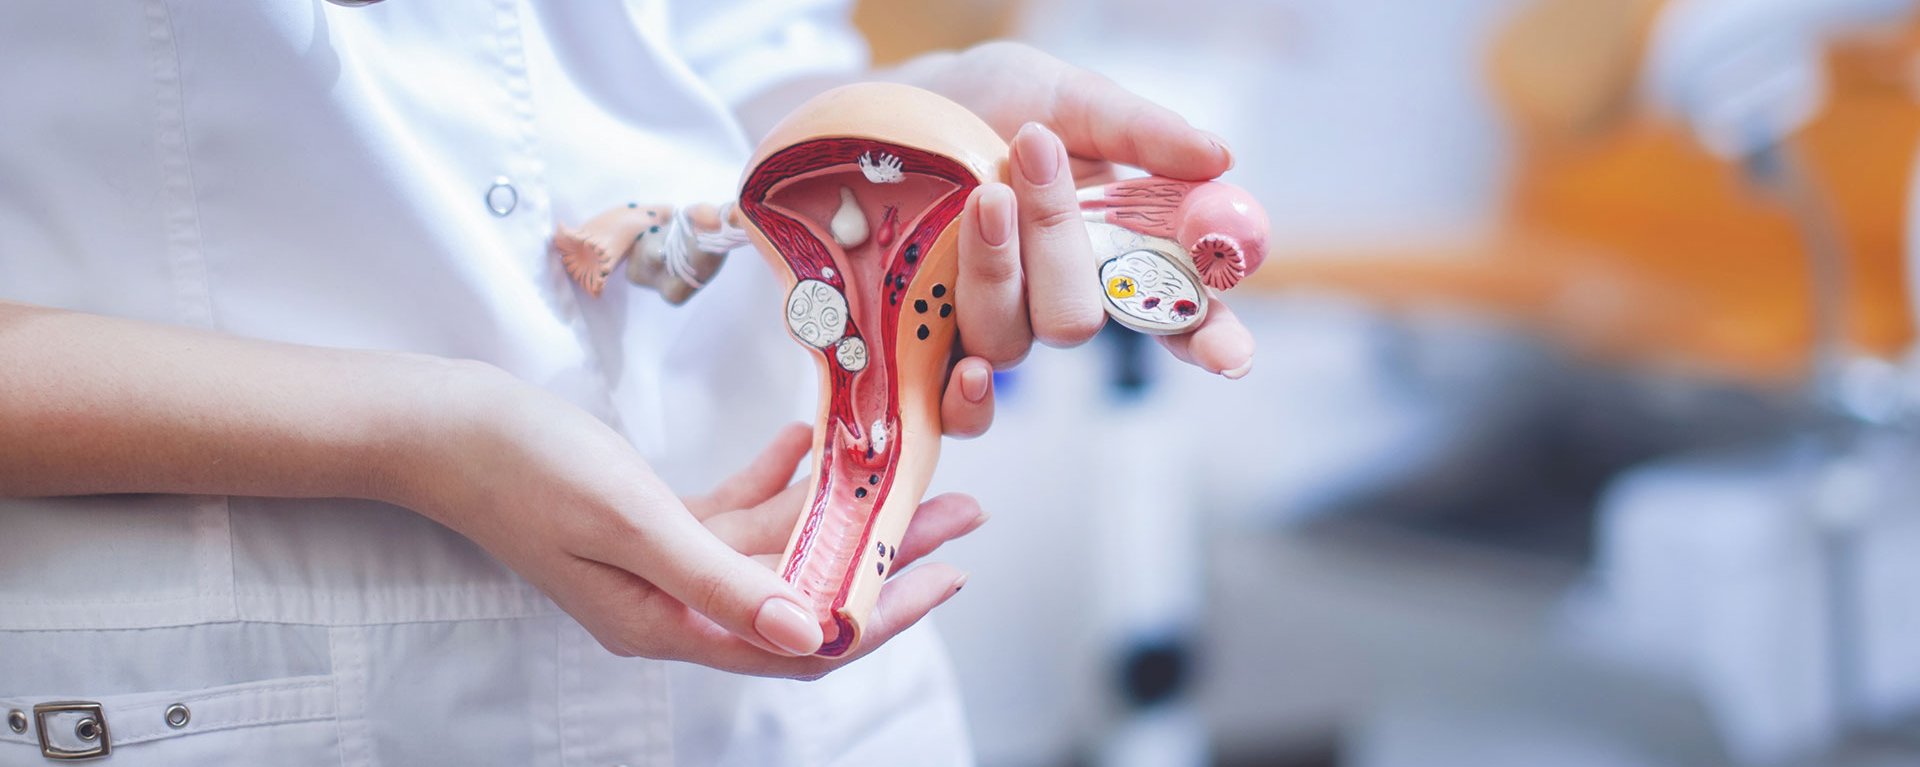 Eine junge Ärztin hält ein Modell des weiblichen Uterus - im Hintergrund ist unscharf ein gynäkologischer Untersuchungsraum zu sehen